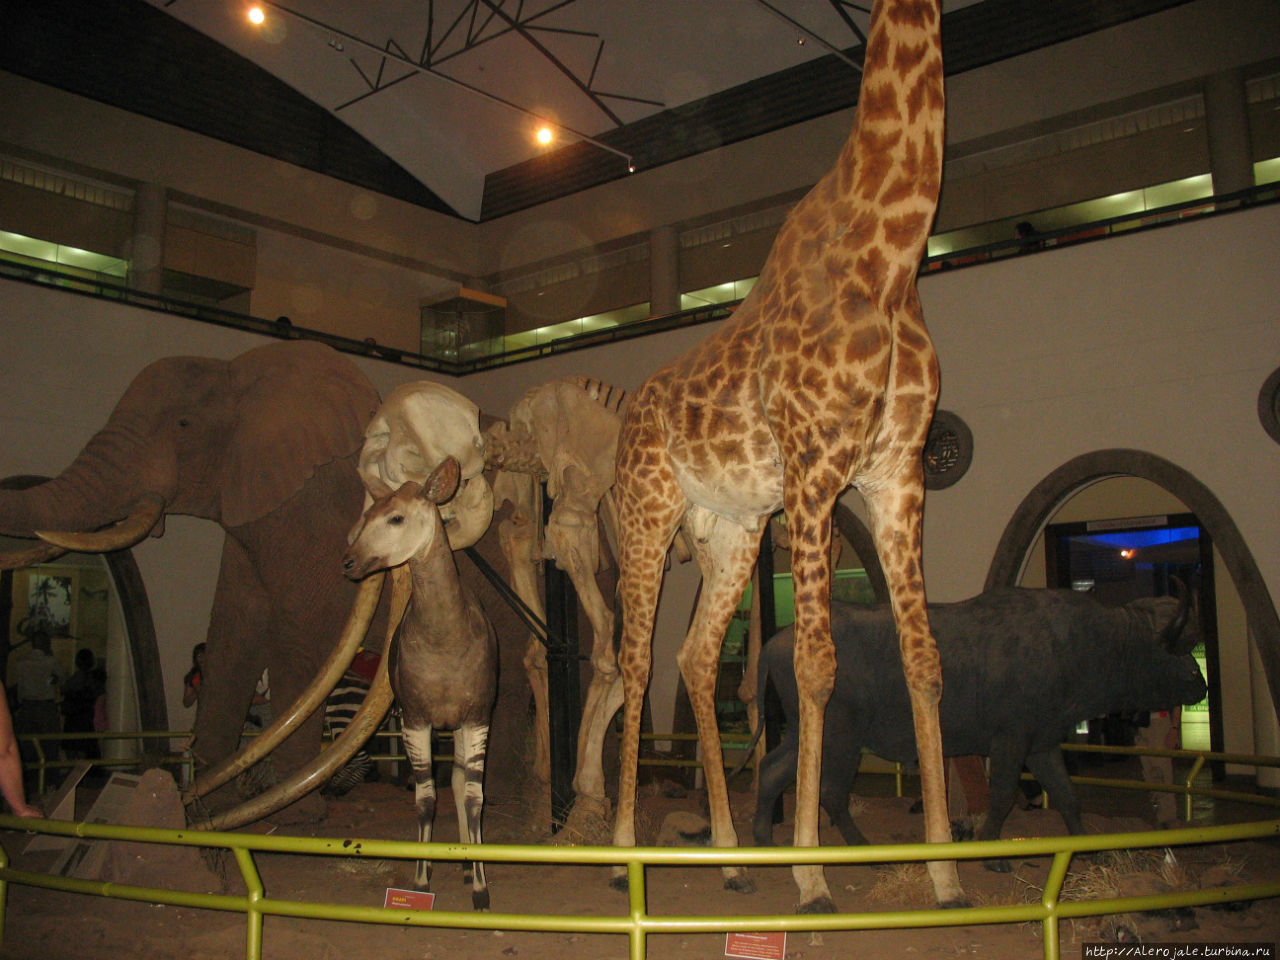 Музей в Наироби Найроби, Кения